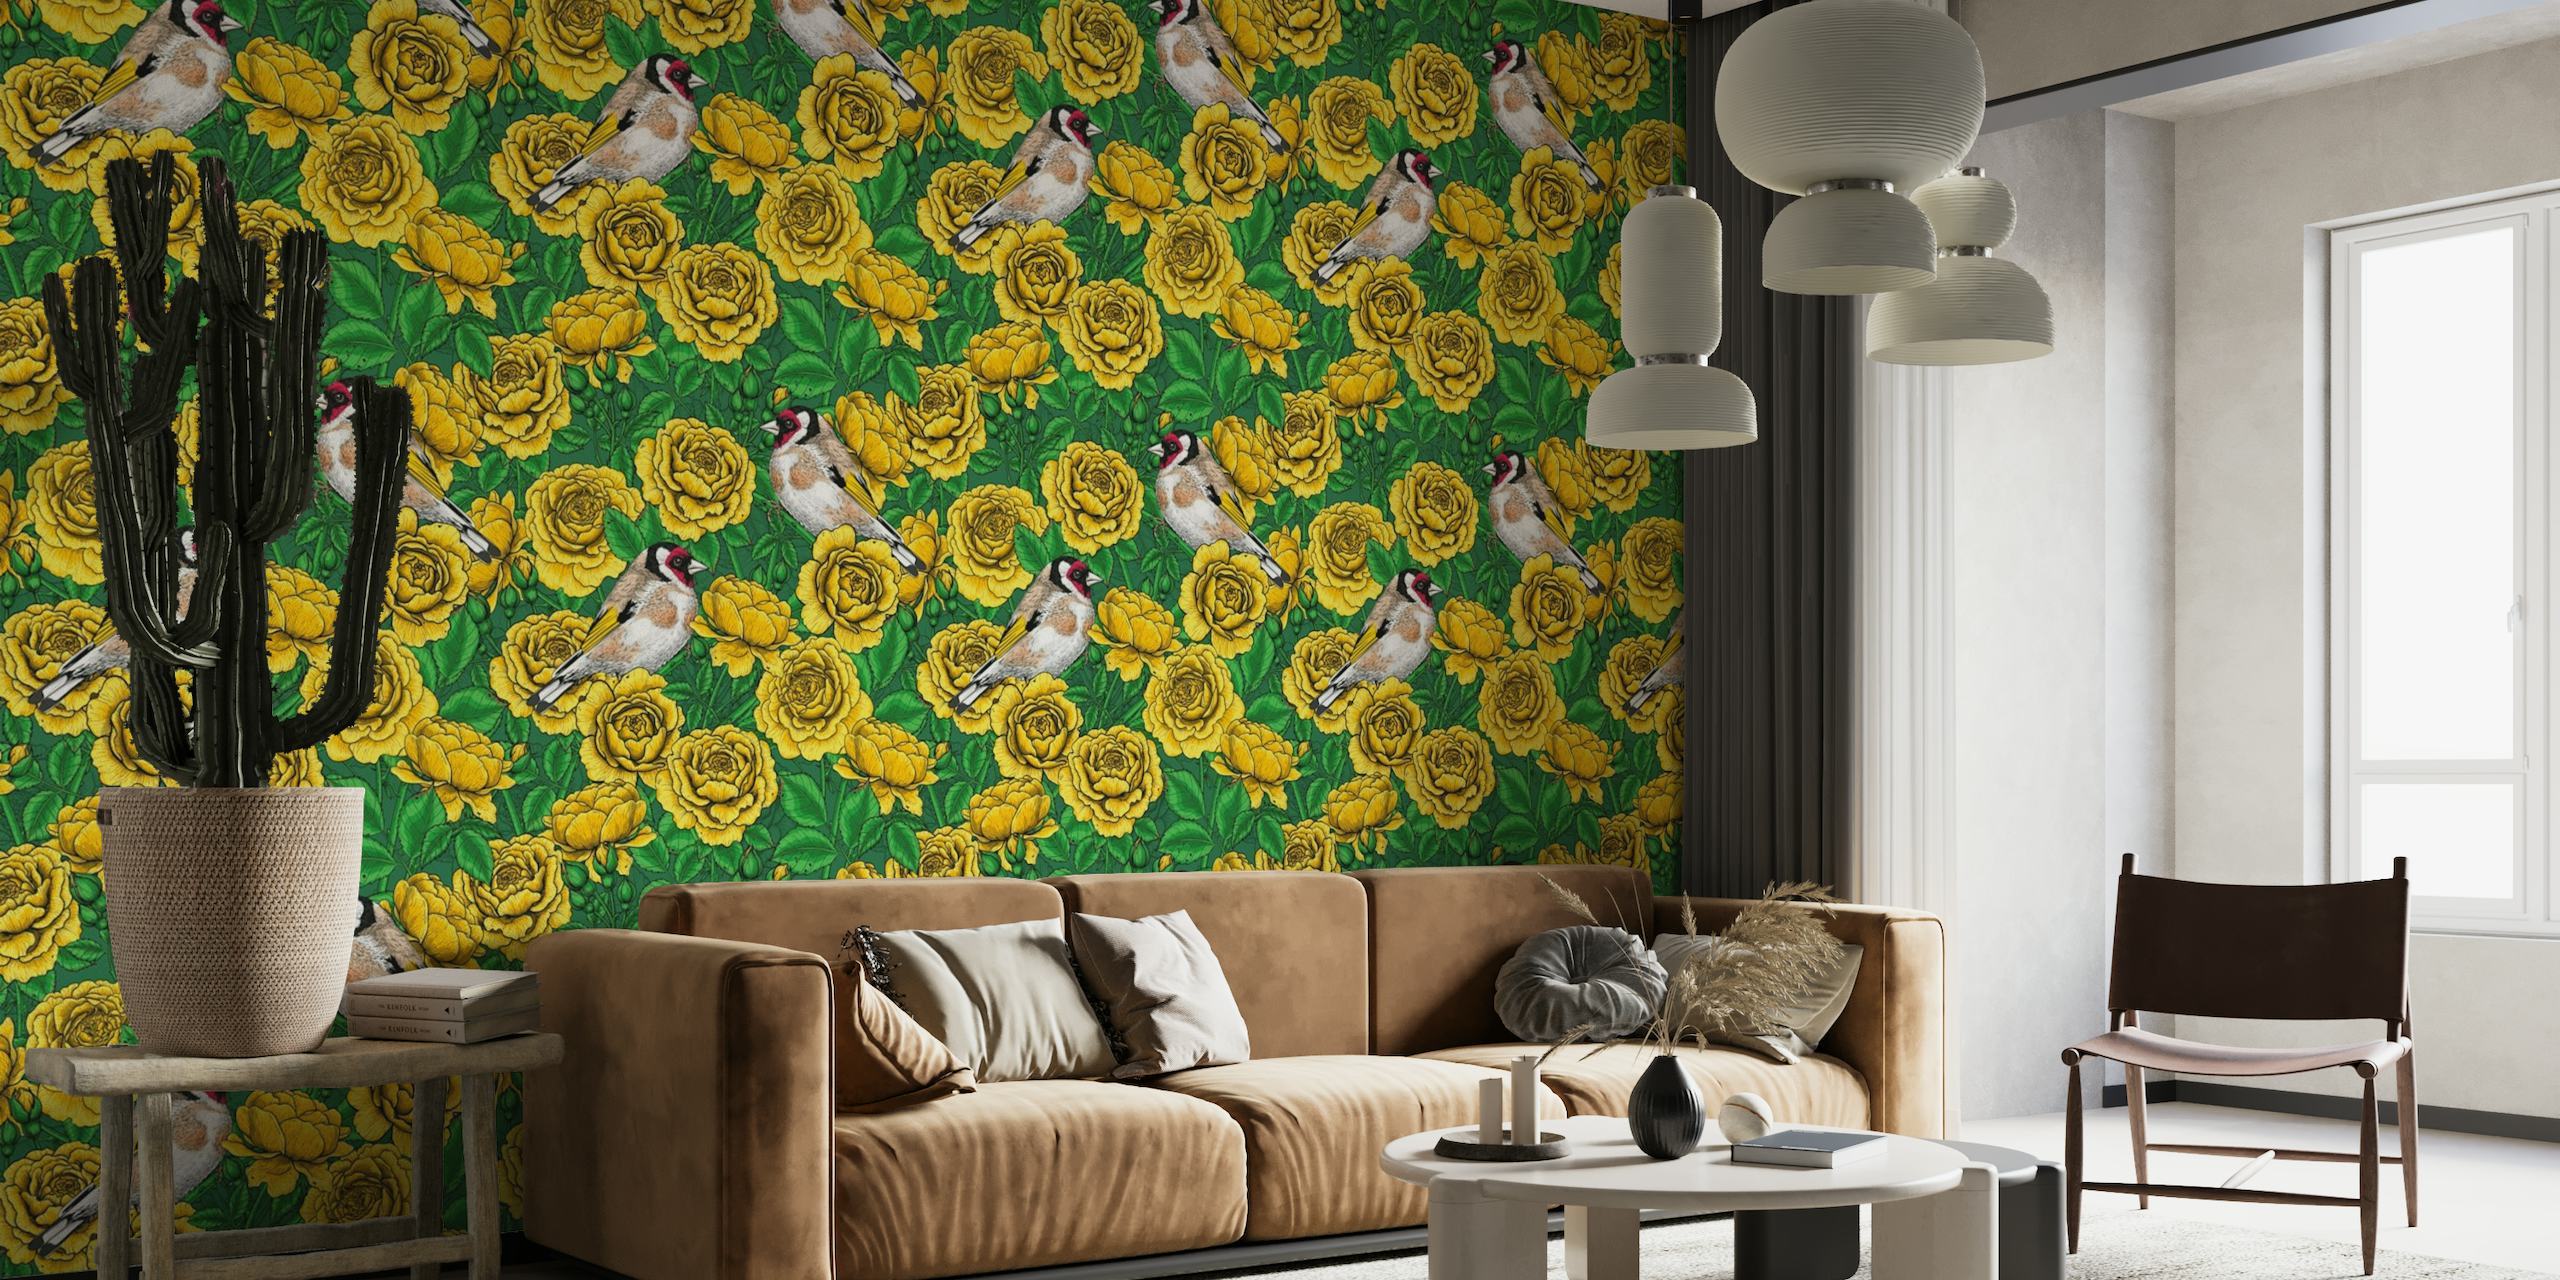 Mural de parede com rosas amarelas e pássaros pintassilgos em um fundo verde